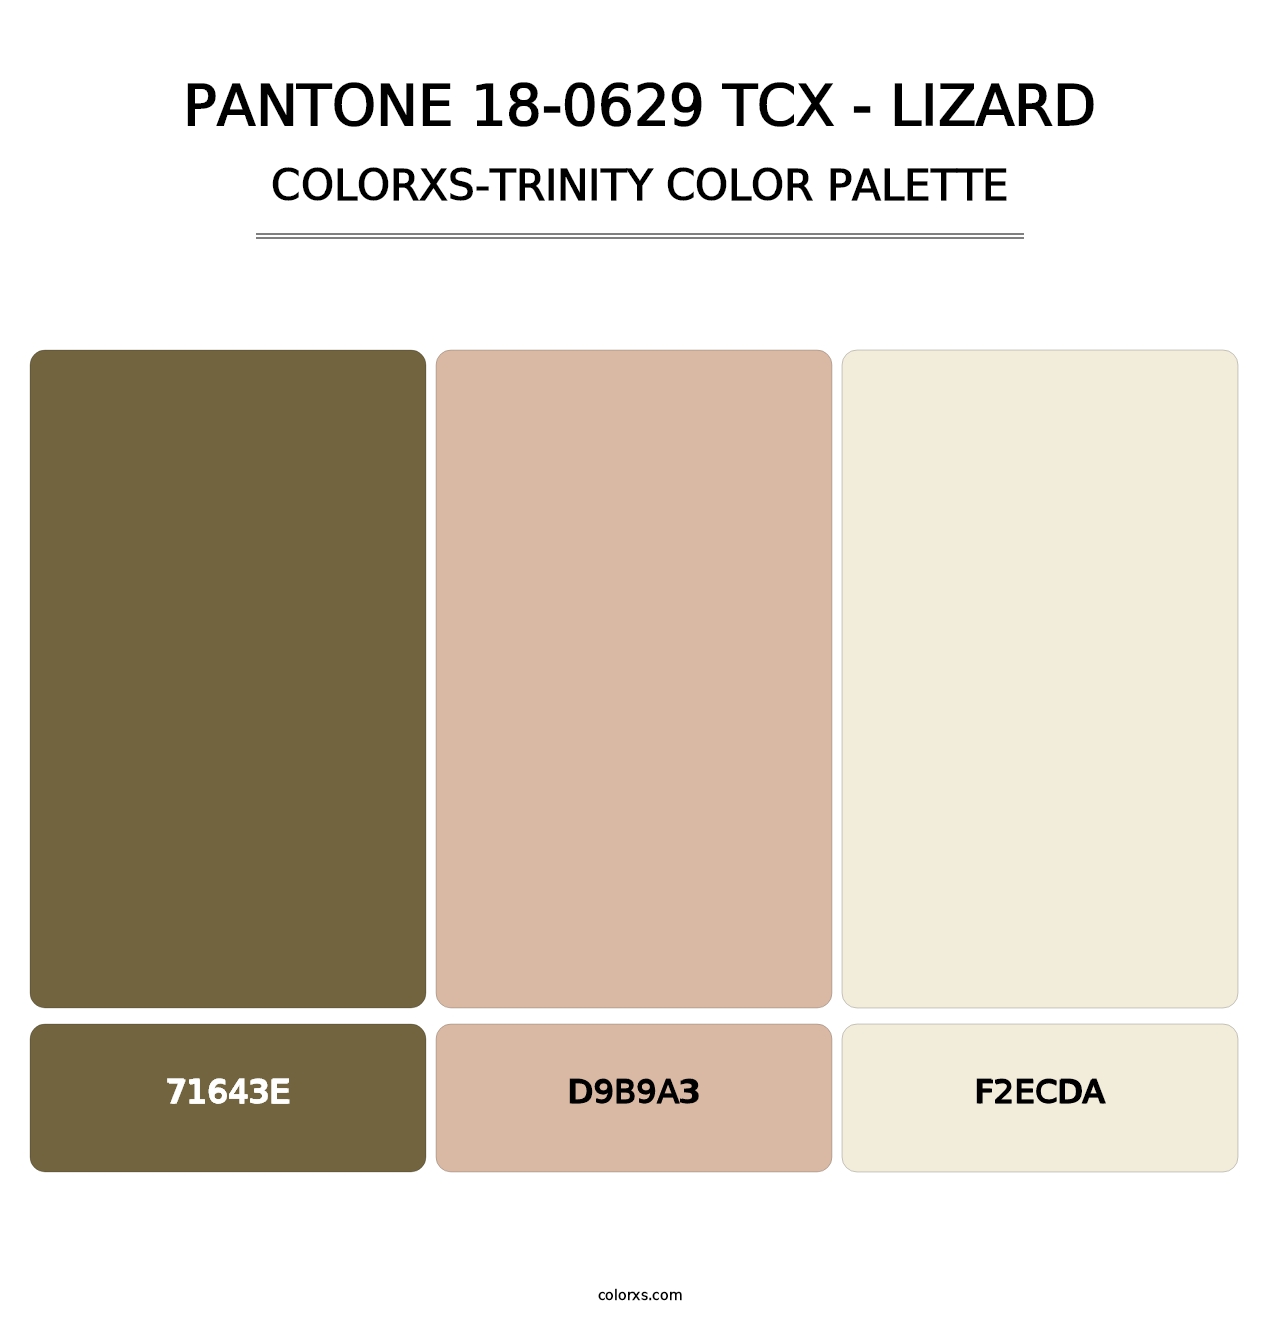 PANTONE 18-0629 TCX - Lizard - Colorxs Trinity Palette